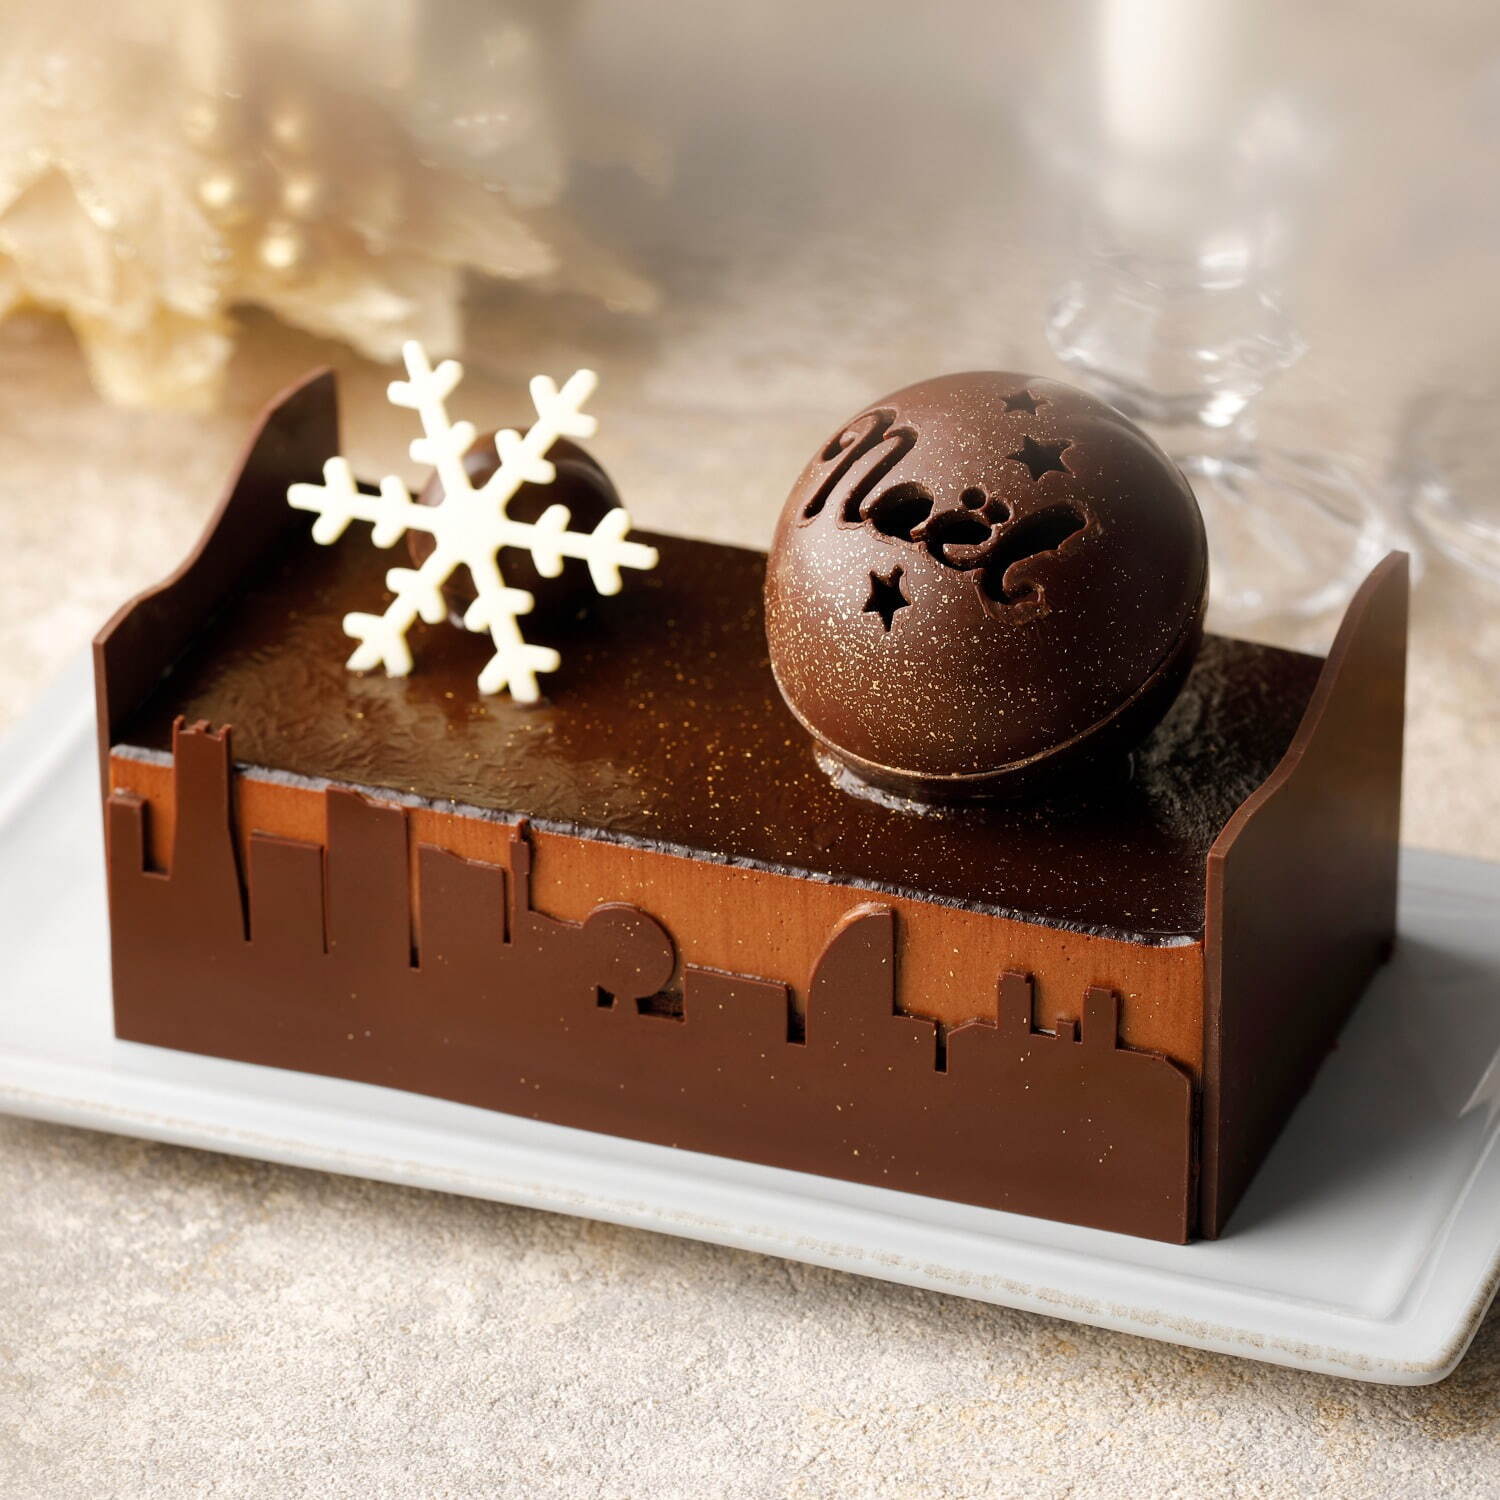 チョコレート専門店 バニラビーンズ クリスマスケーキ みなとみらいの夜 イメージの9層チョコケーキ ファッションプレス